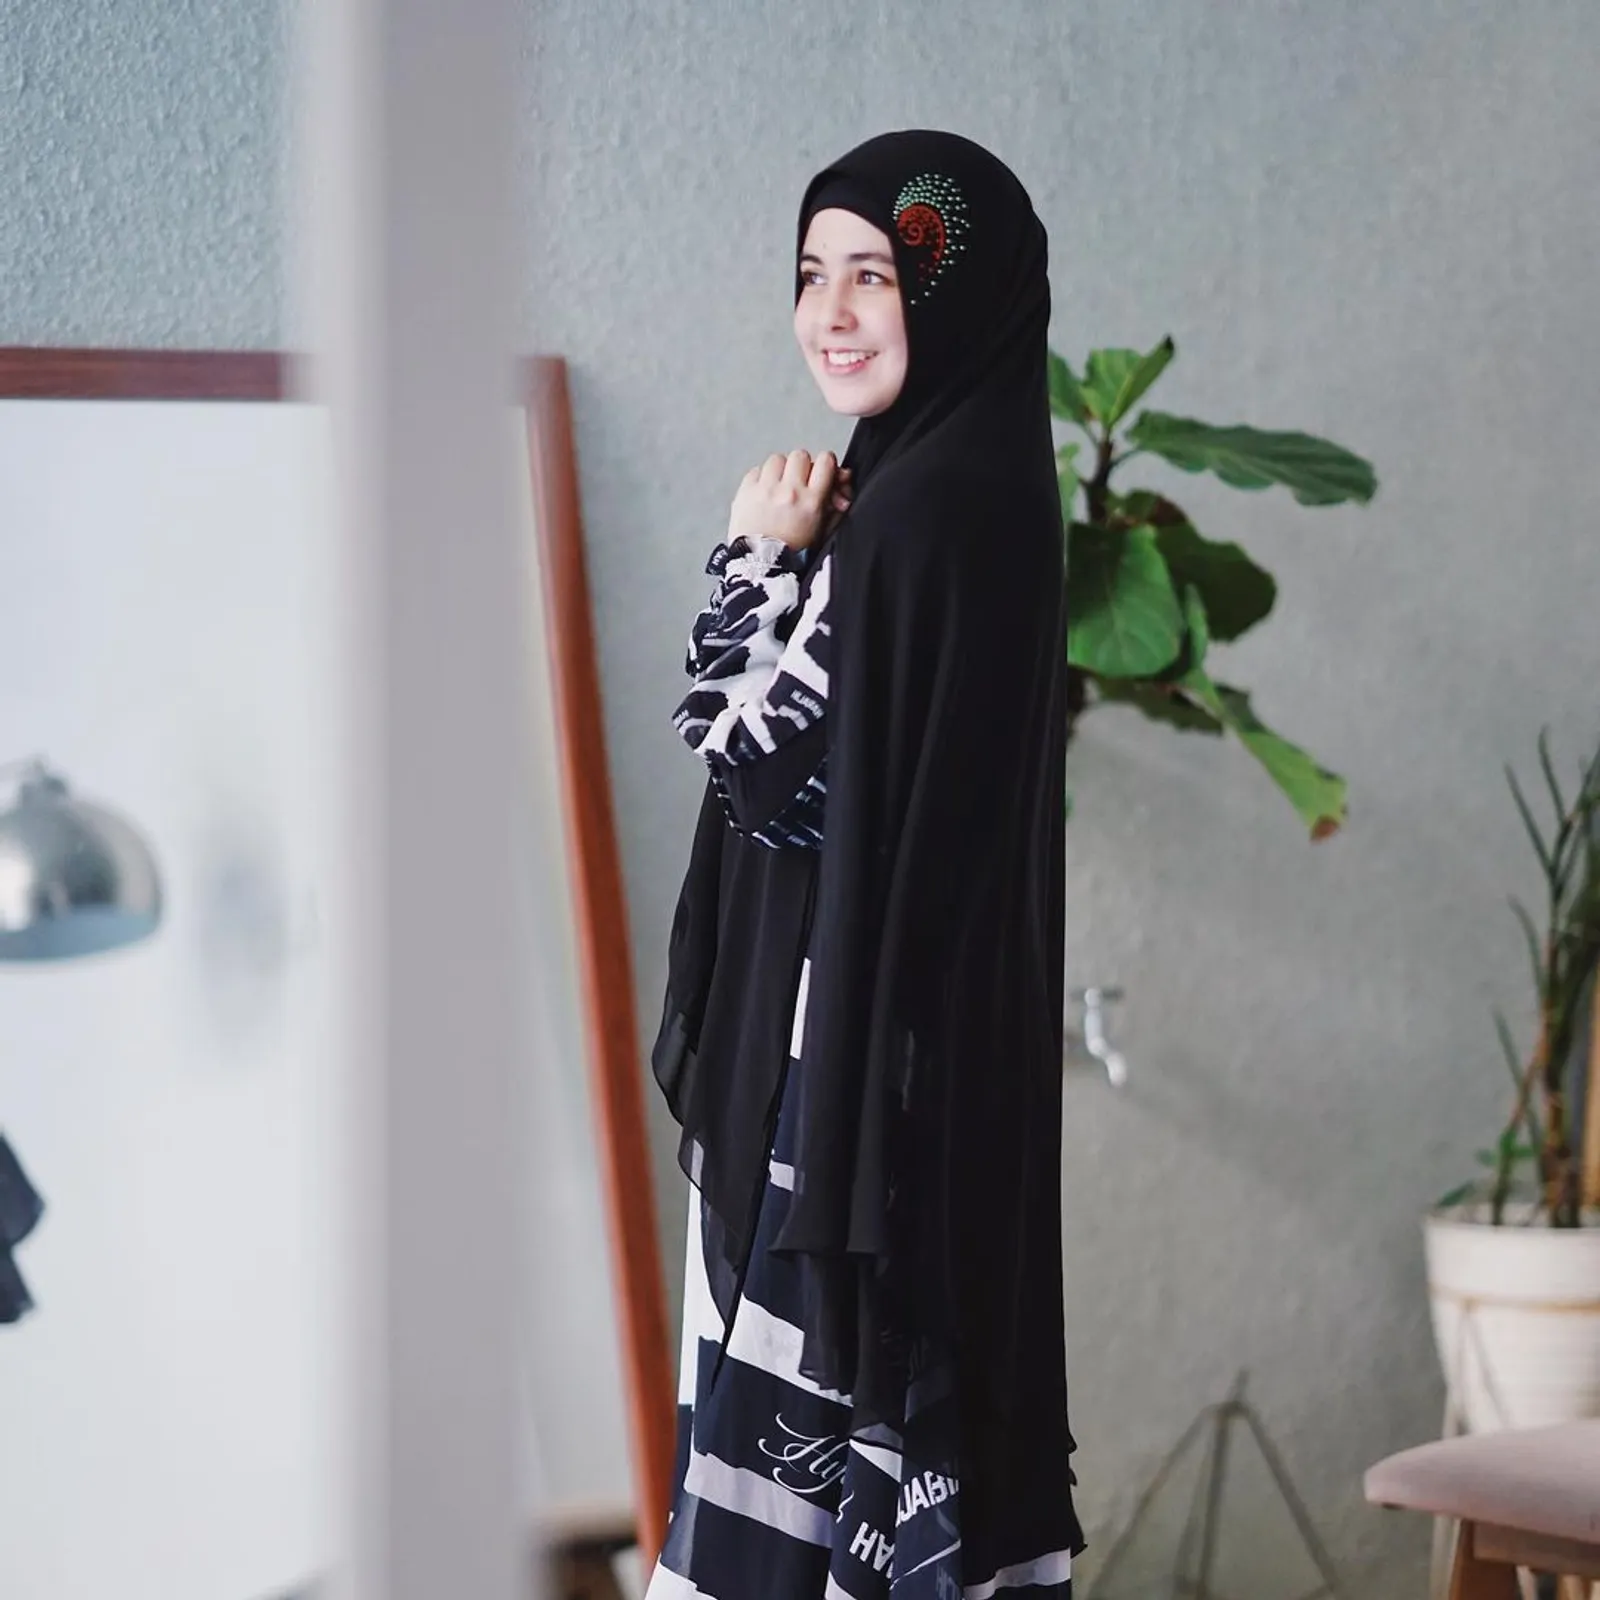 Rumor Bercerai, Gaya Hijab Terkini Risty Tagor Ikut Mencuri Perhatian